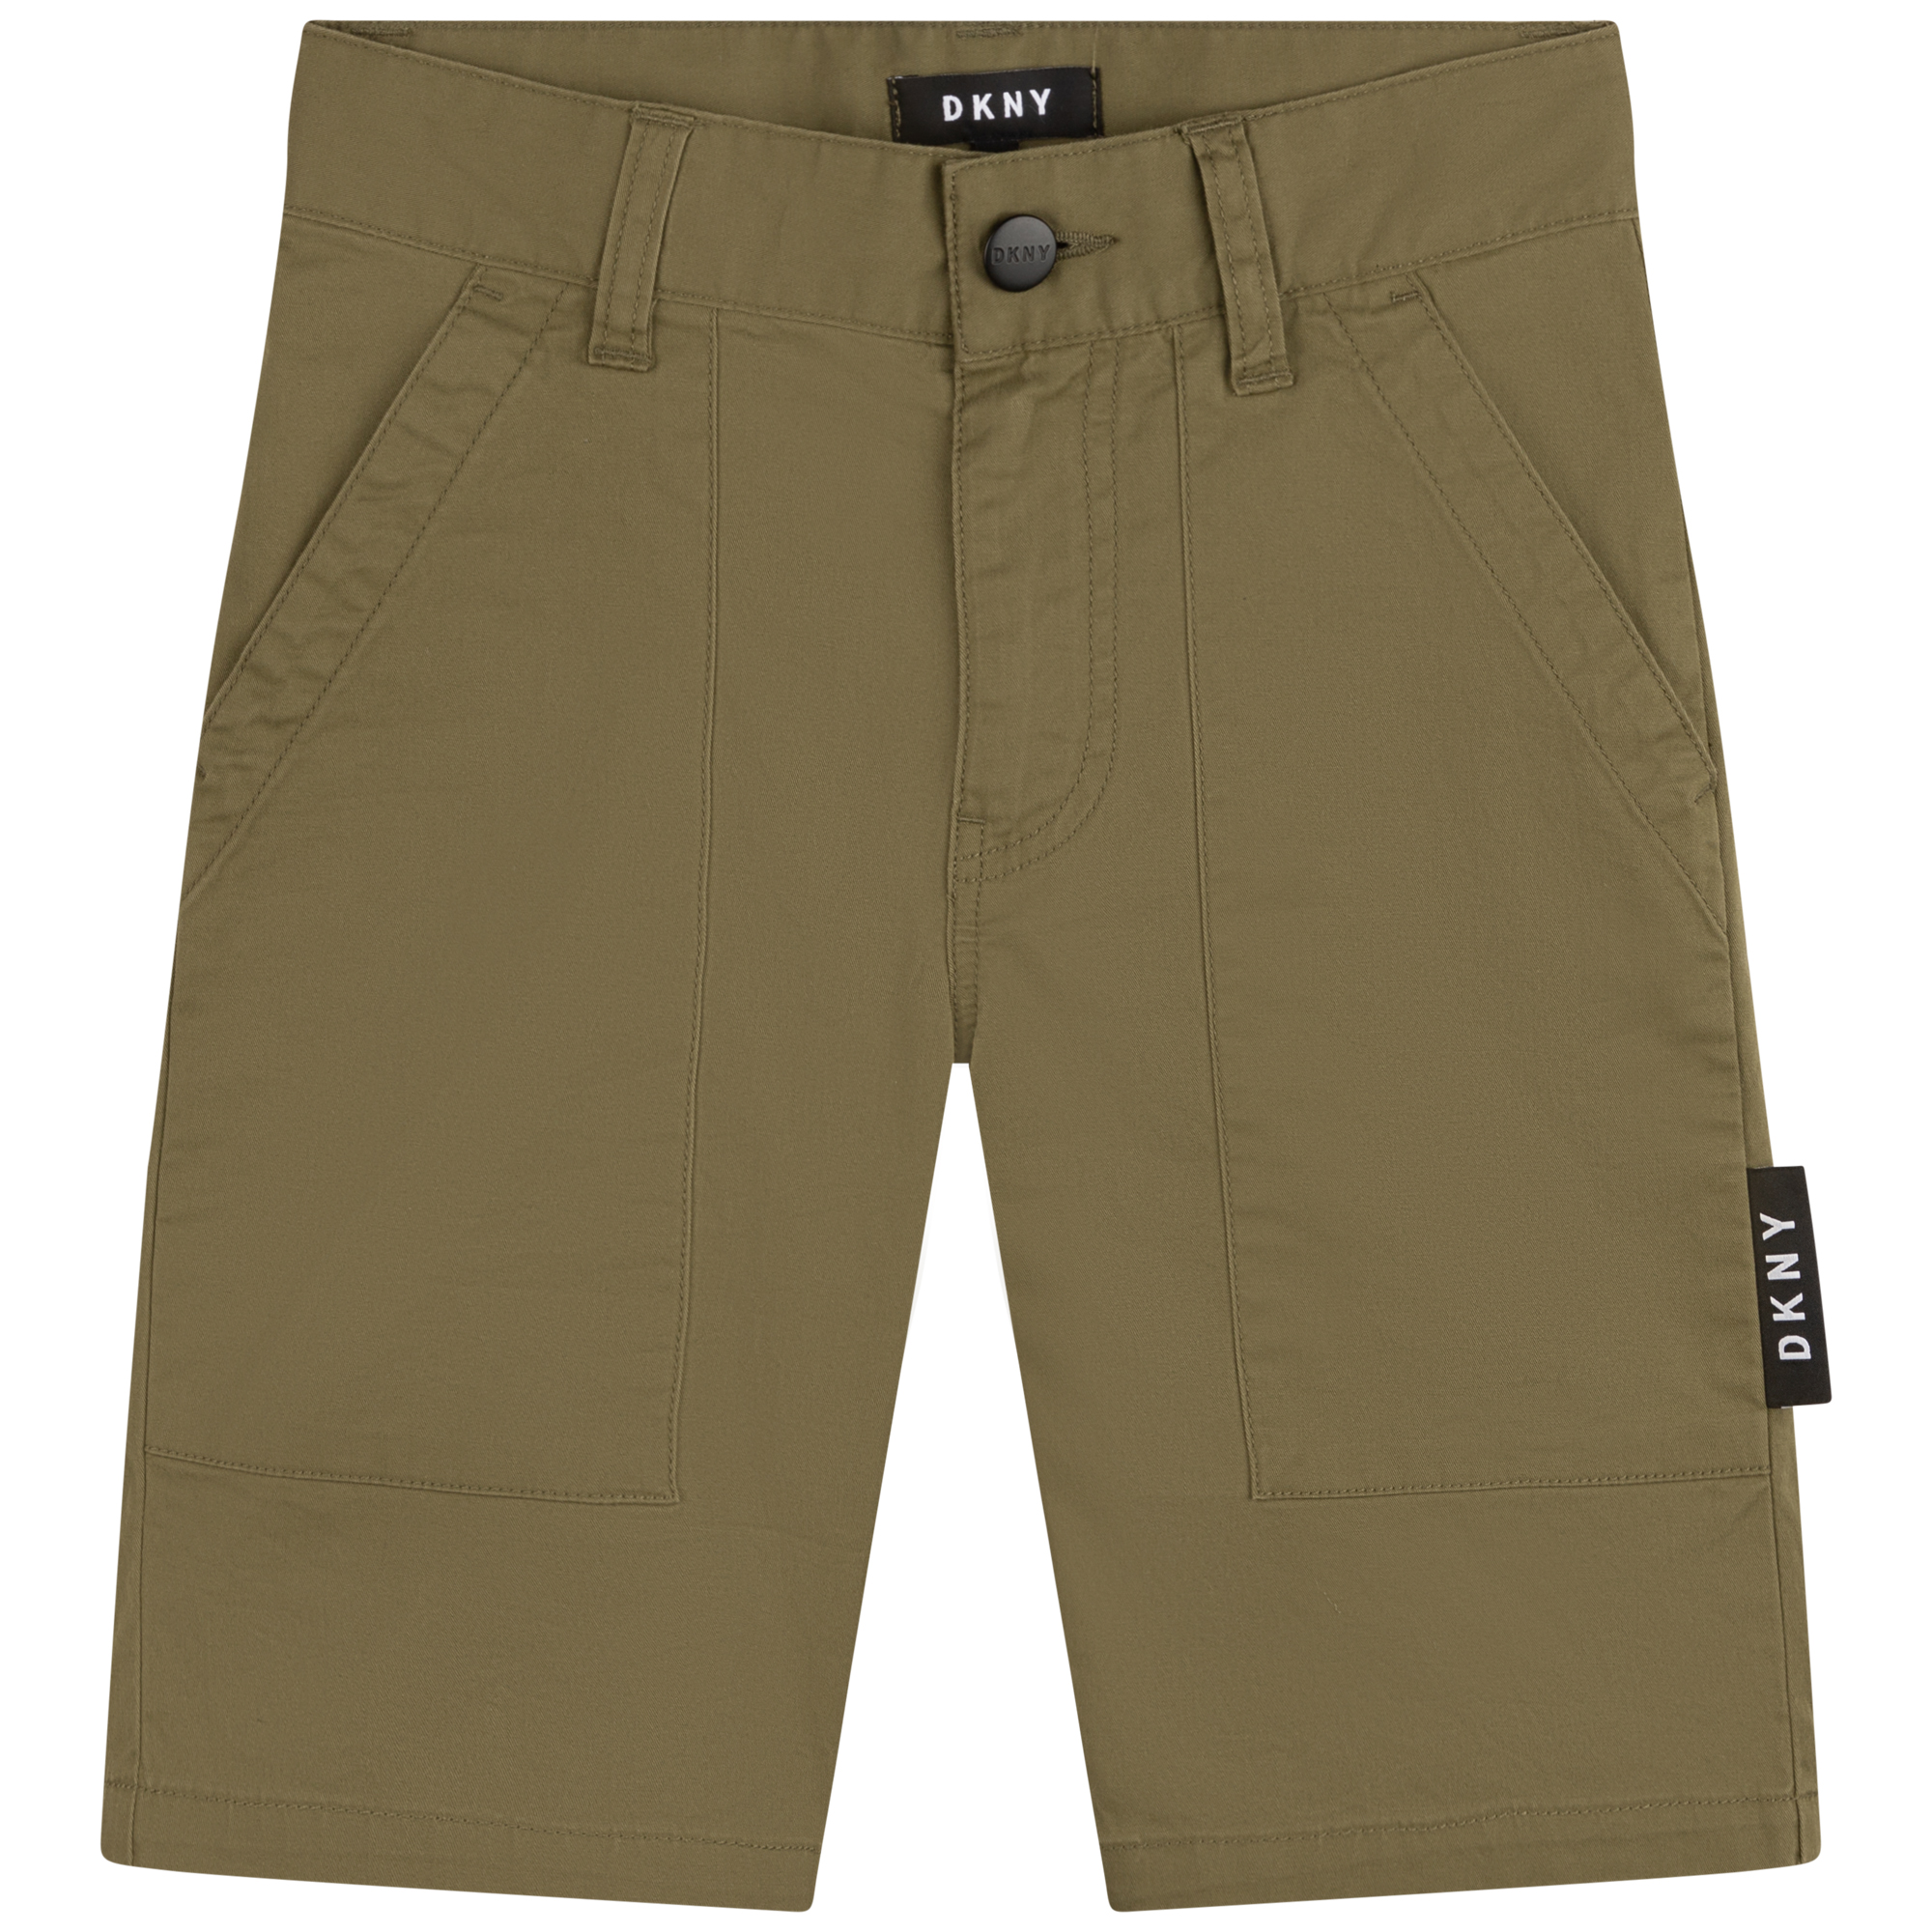 Bermuda-Shorts aus einfarbiger Baumwolle DKNY Für JUNGE